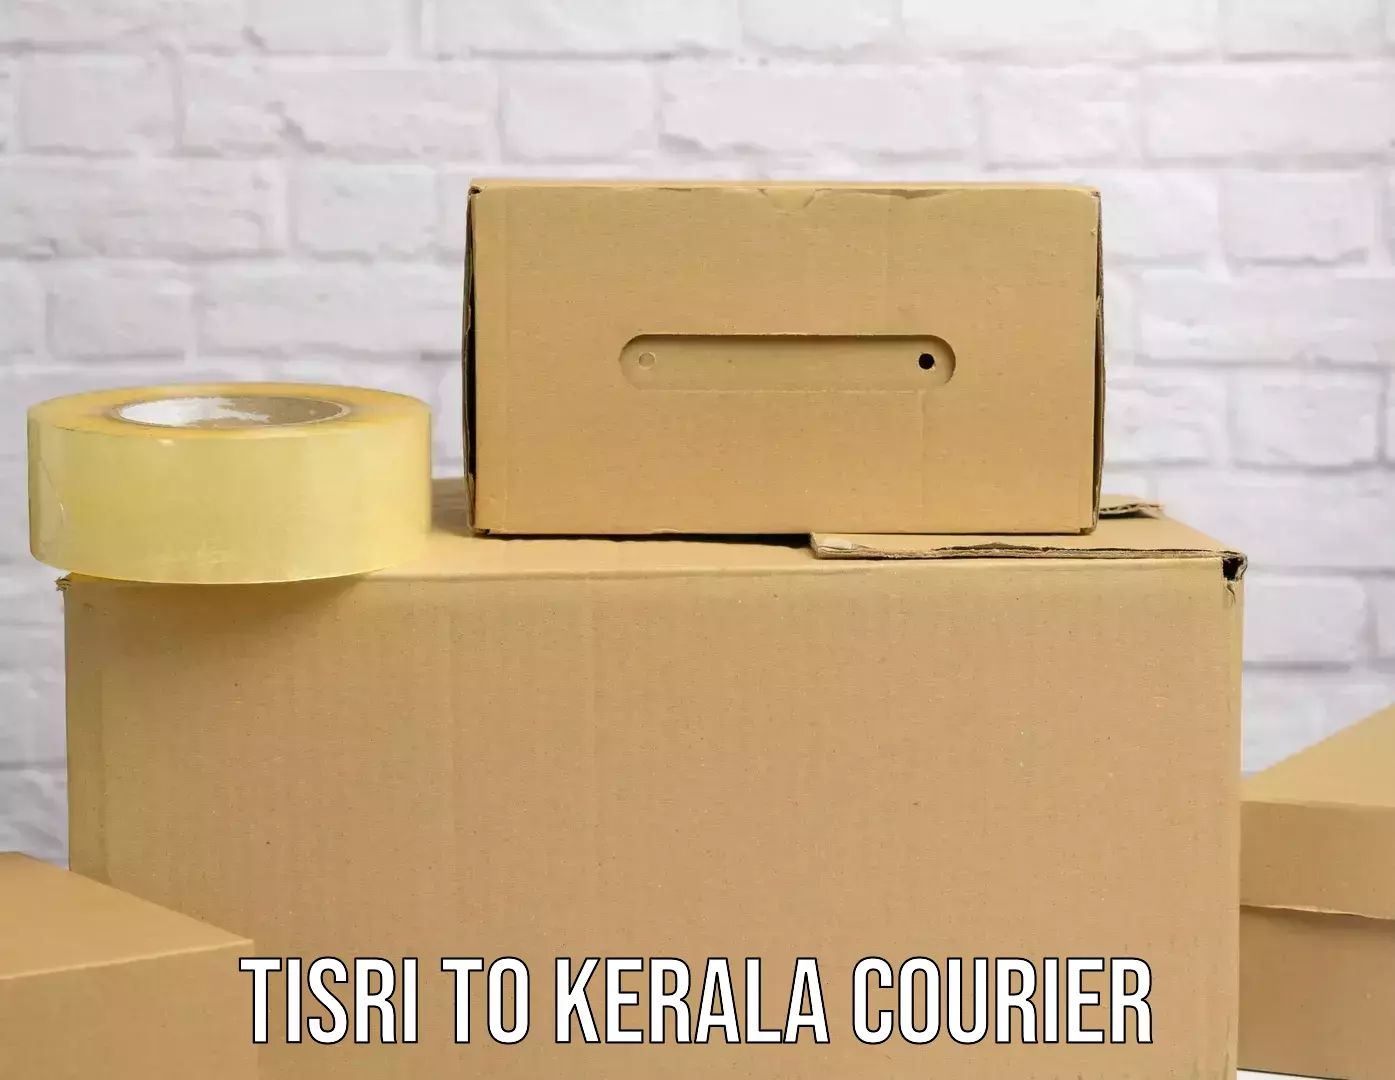 Ocean freight courier Tisri to Kannapuram